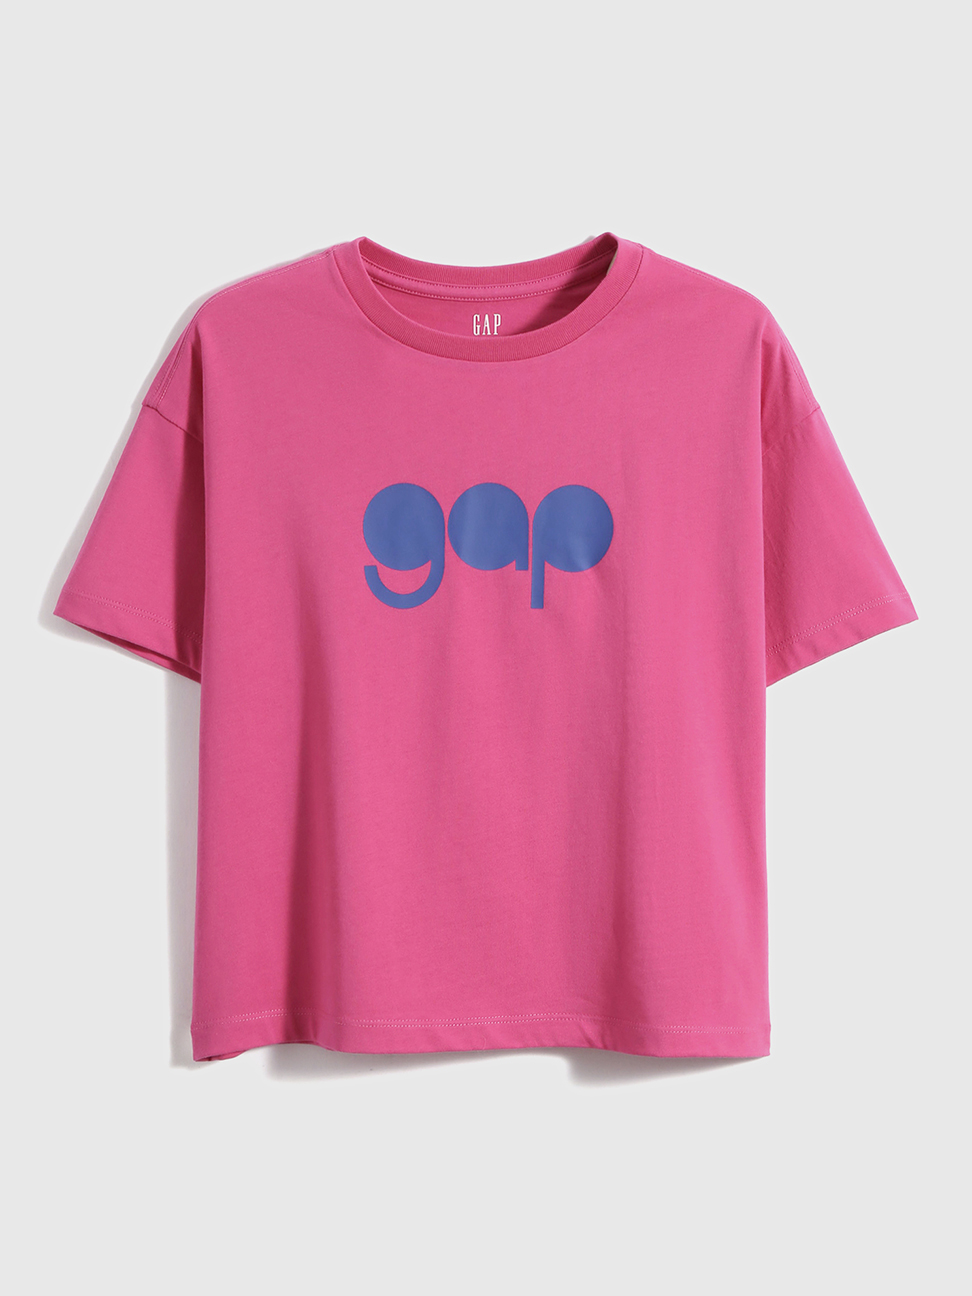 男童裝|Logo純棉圓領短袖T恤-紫紅色